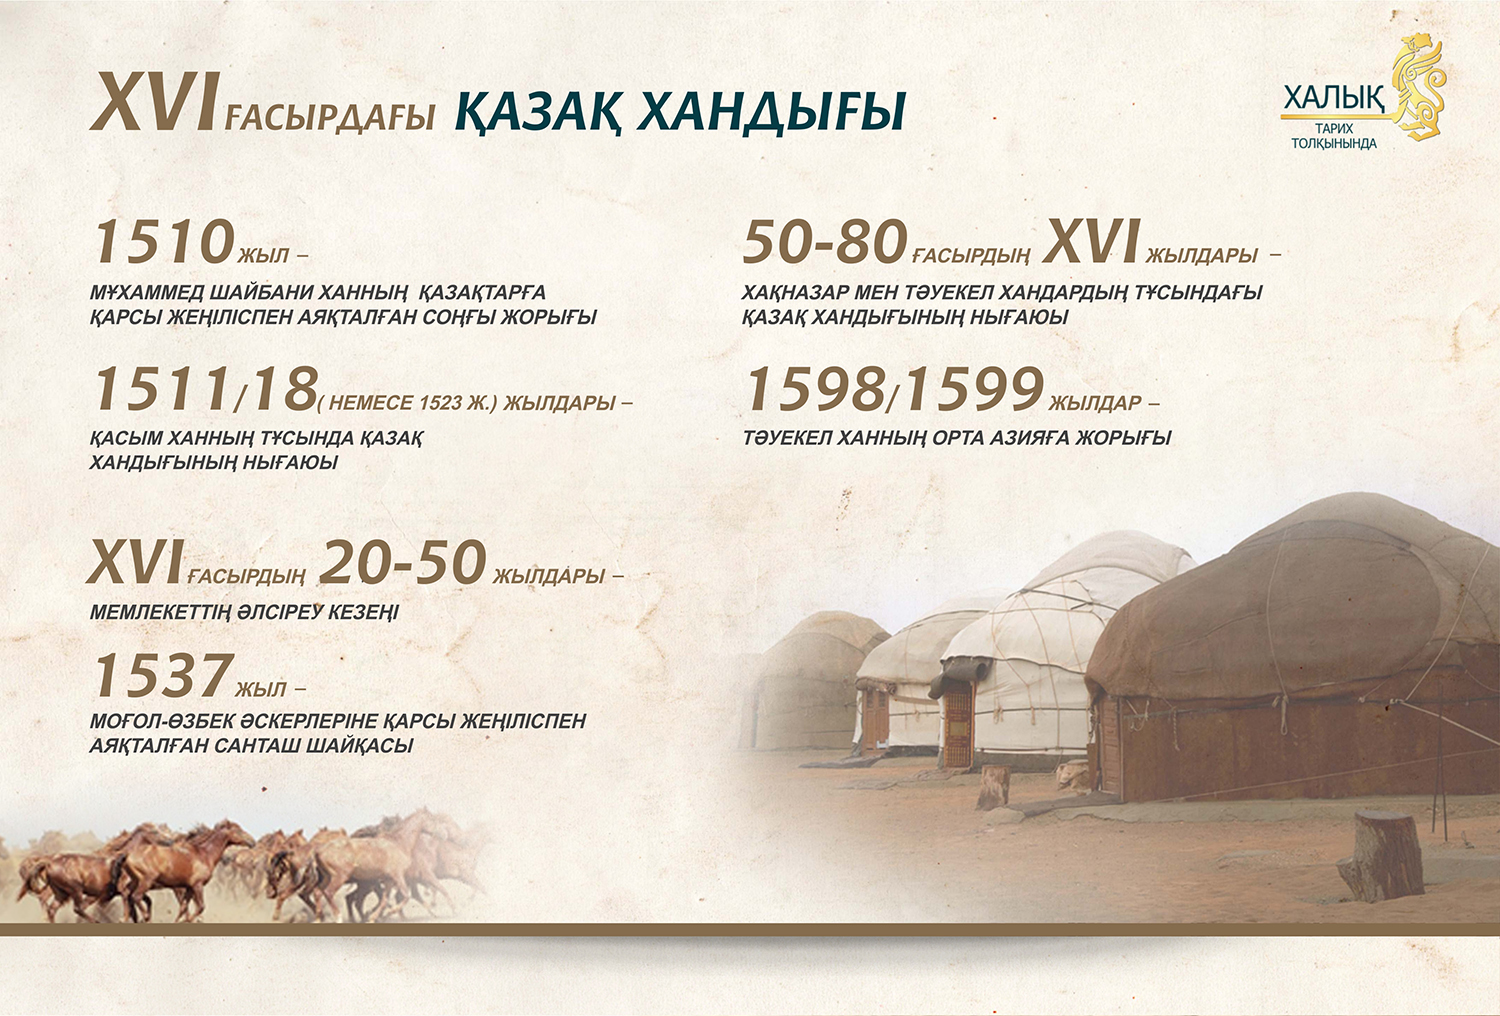 Казахское ханство в XVI веке